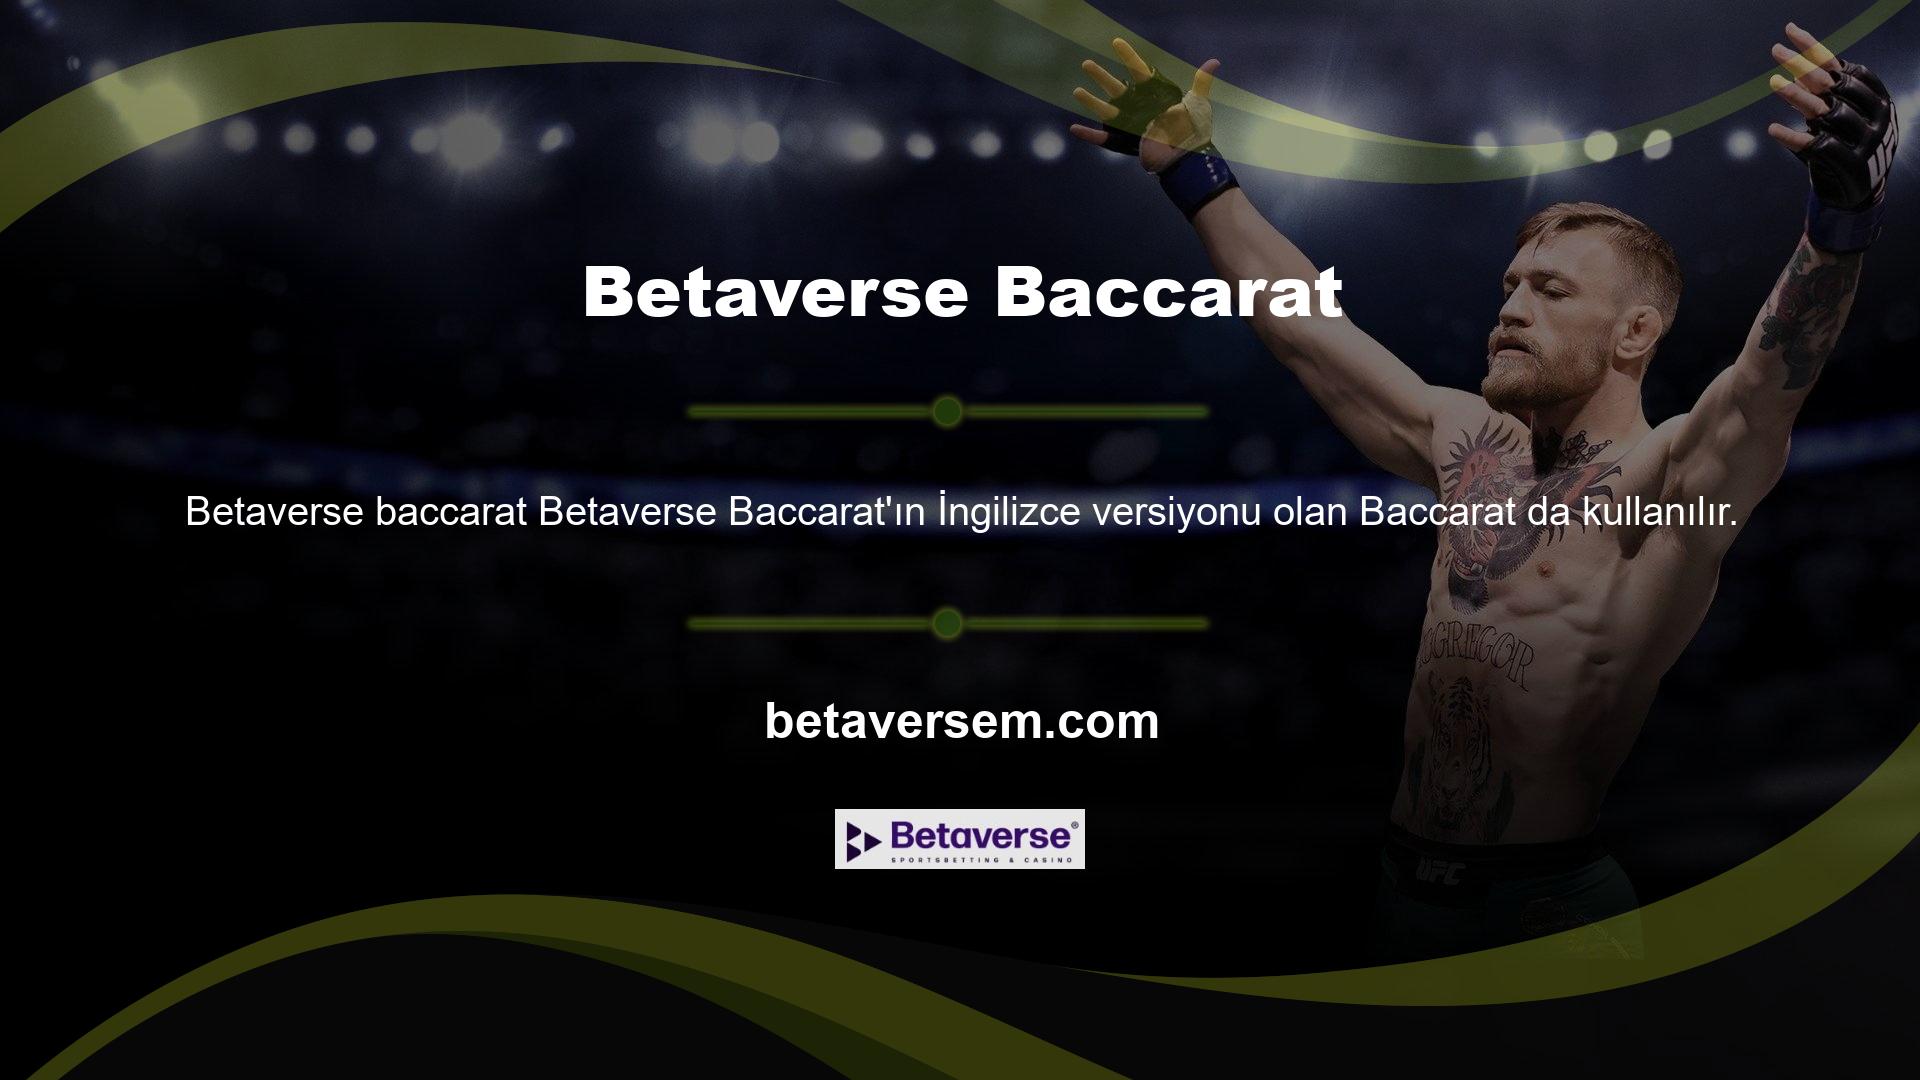 Baccarat bahis sitesi Betaverse tarafından kullanıcılarına sunulan canlı casino oyunlarından sadece bir tanesidir